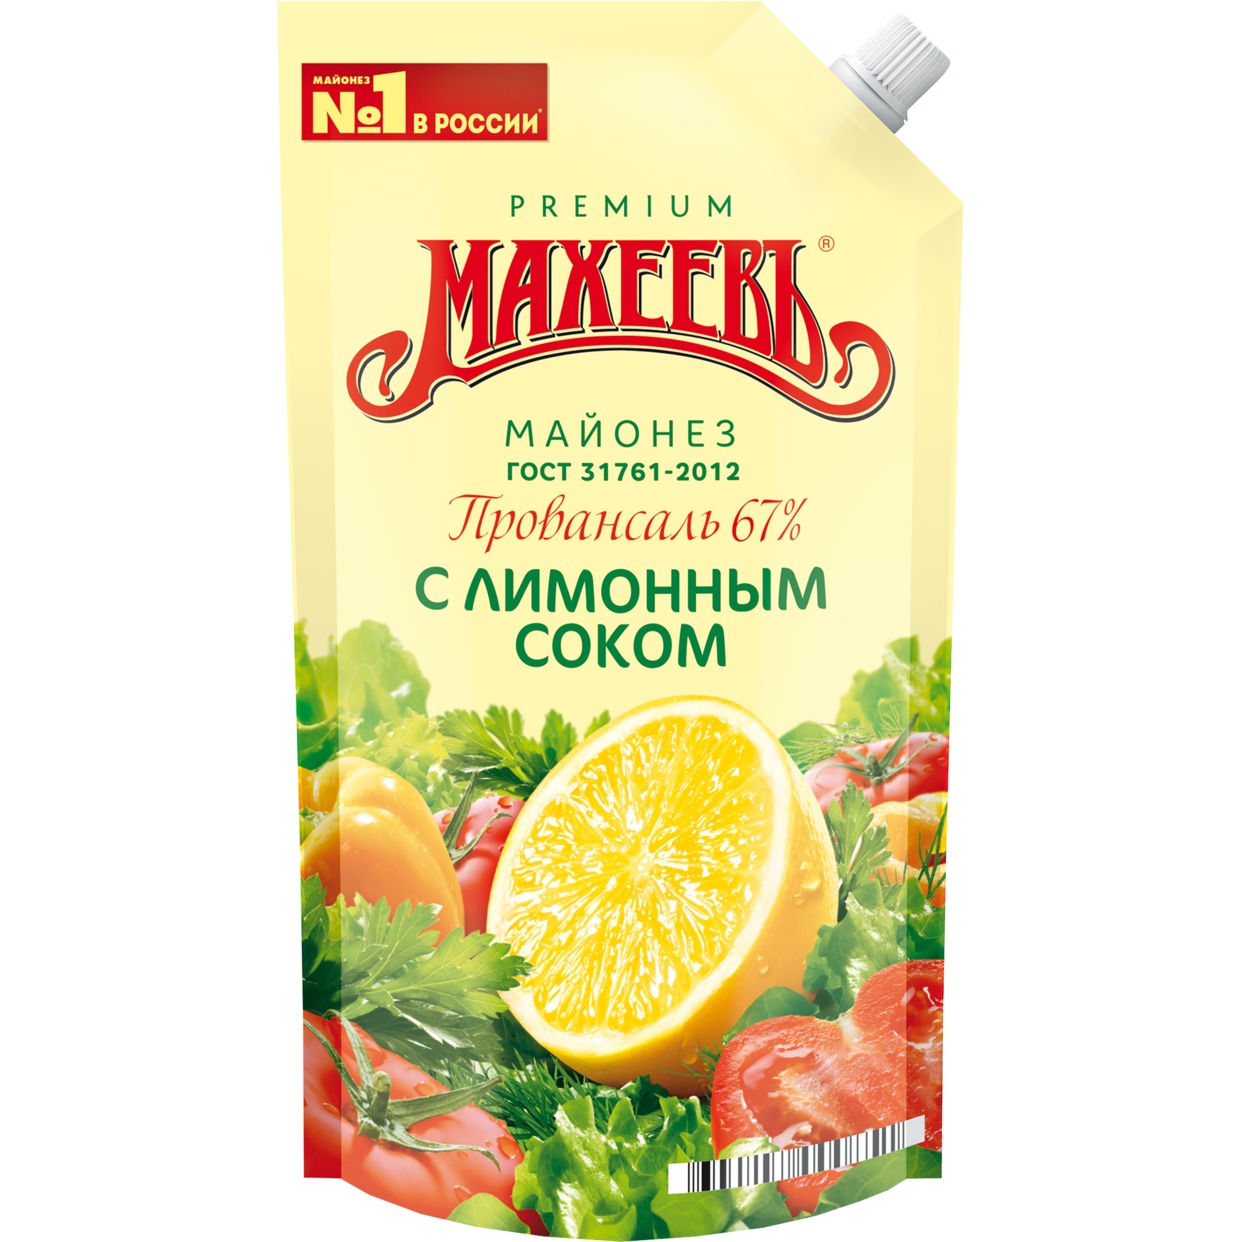 Майонез Махеевъ, с лимонным соком, 67%, 400 мл по акции в Пятерочке